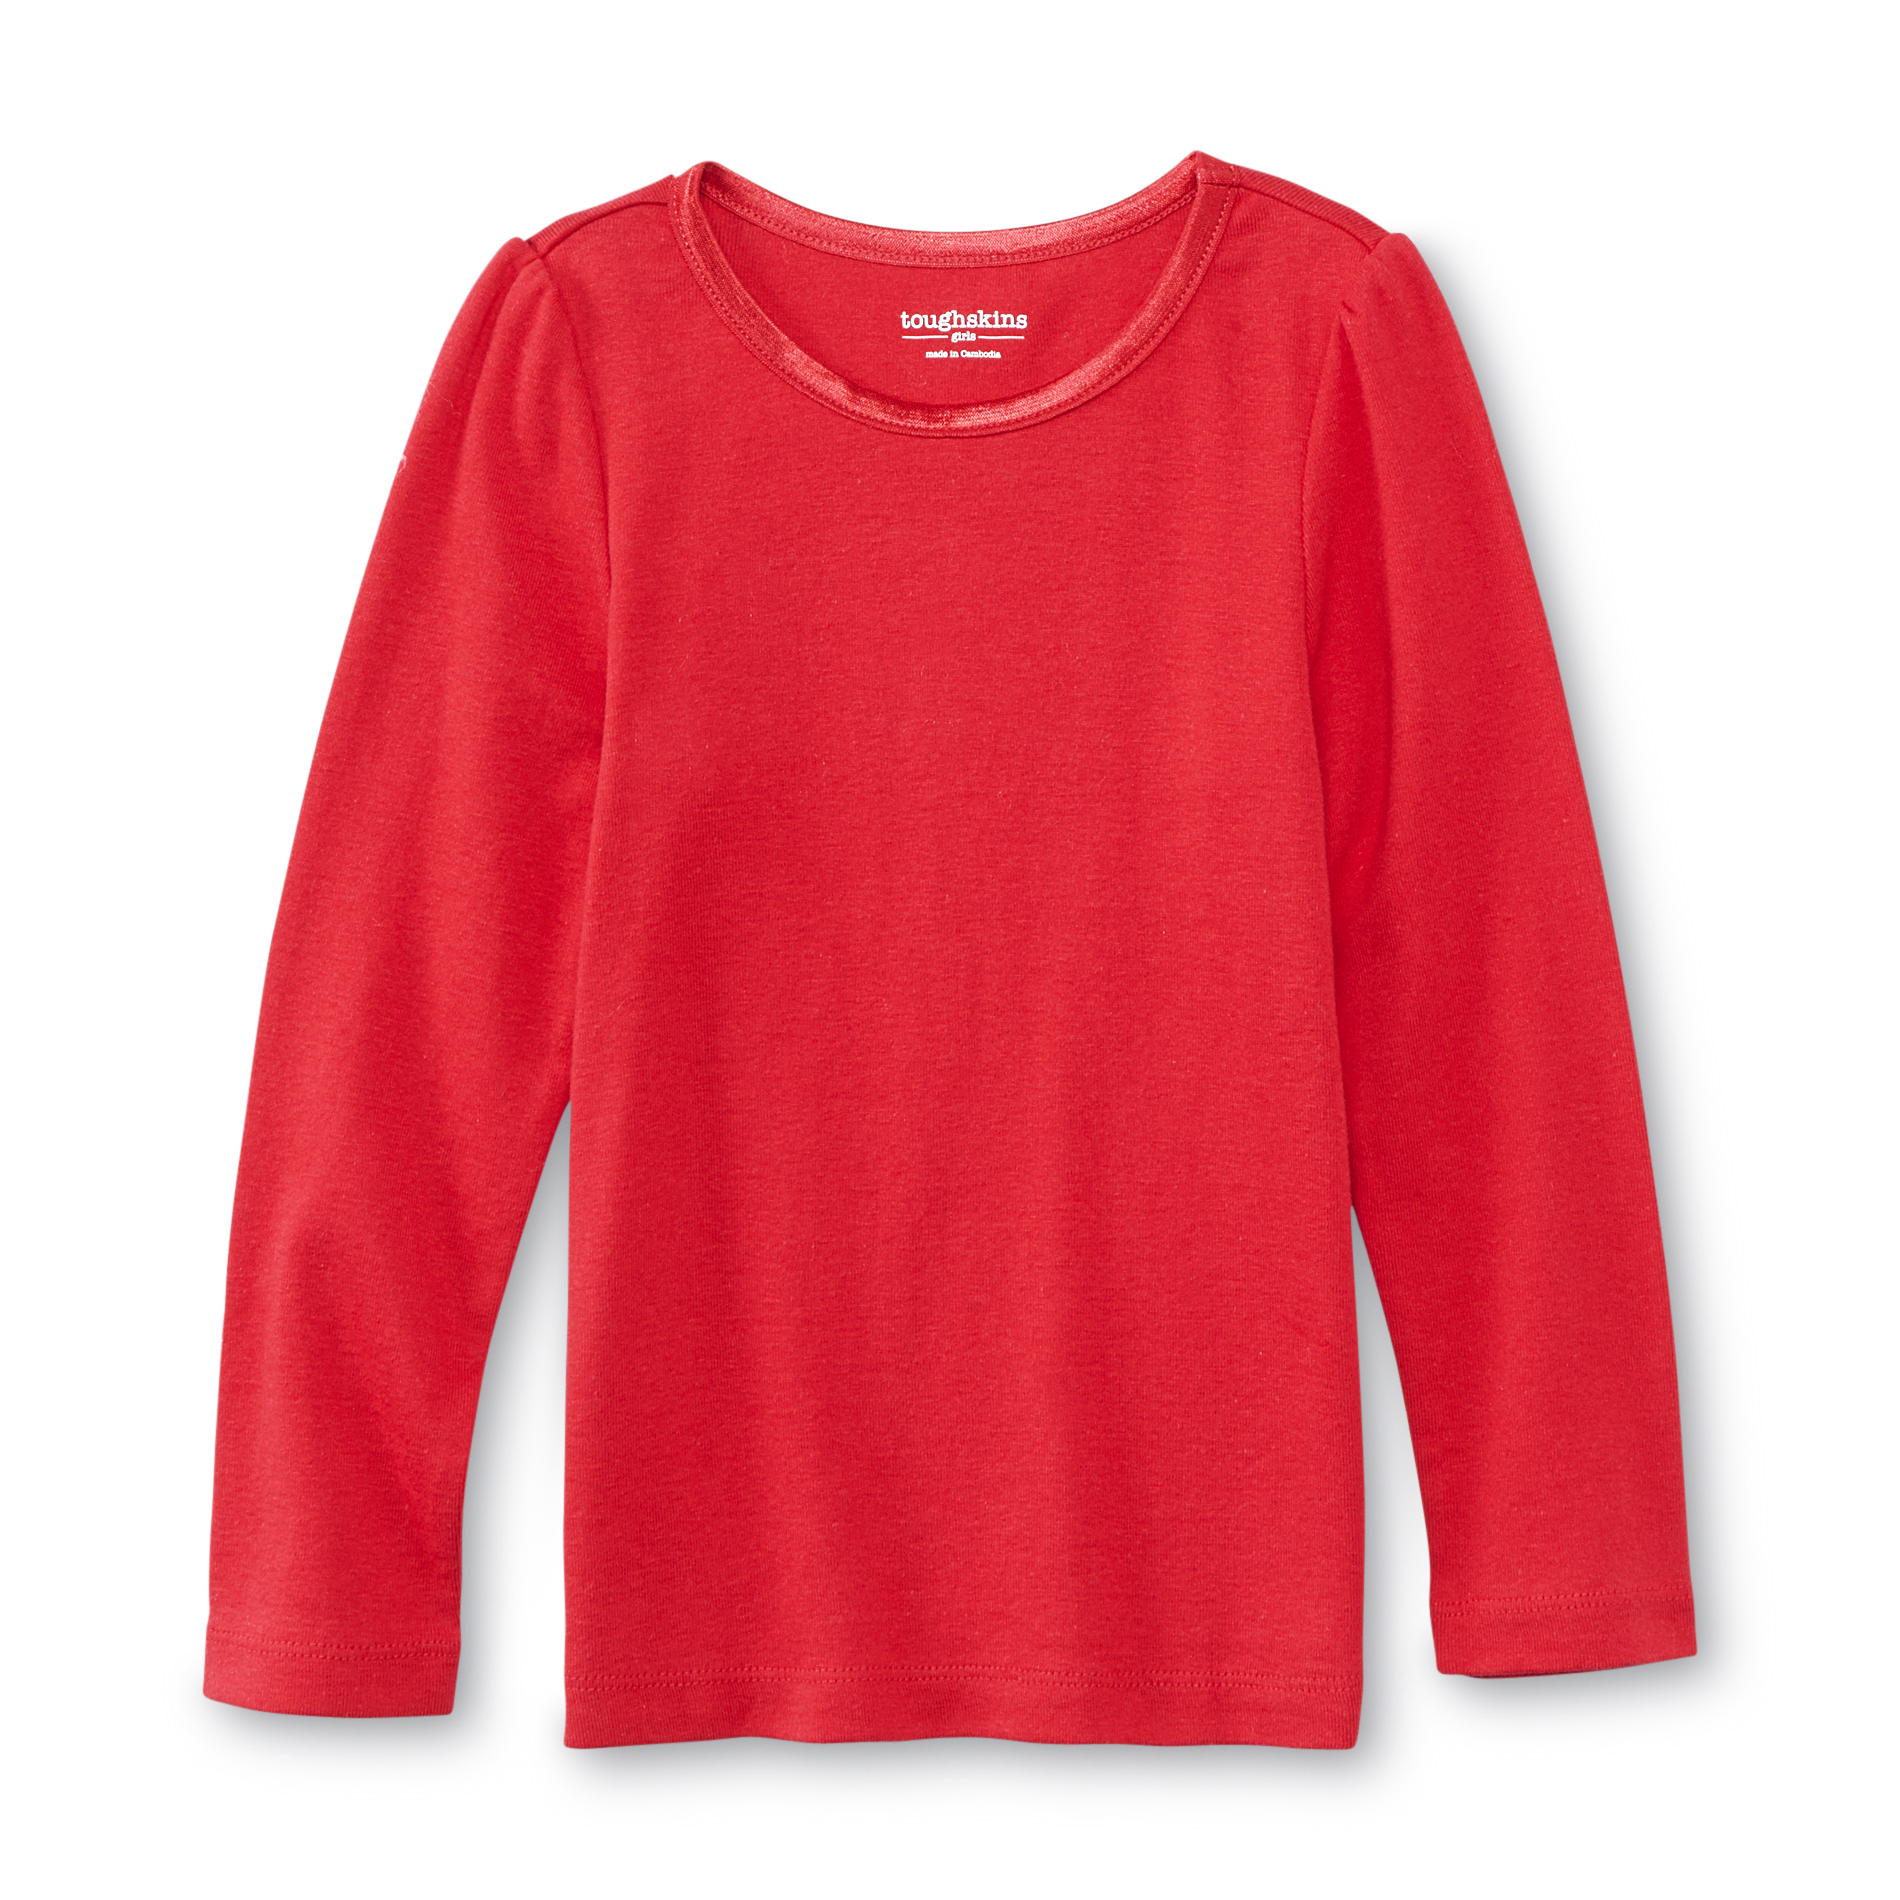 Toughskins Infant & Toddler Girl's Long-Sleeve T-Shirt